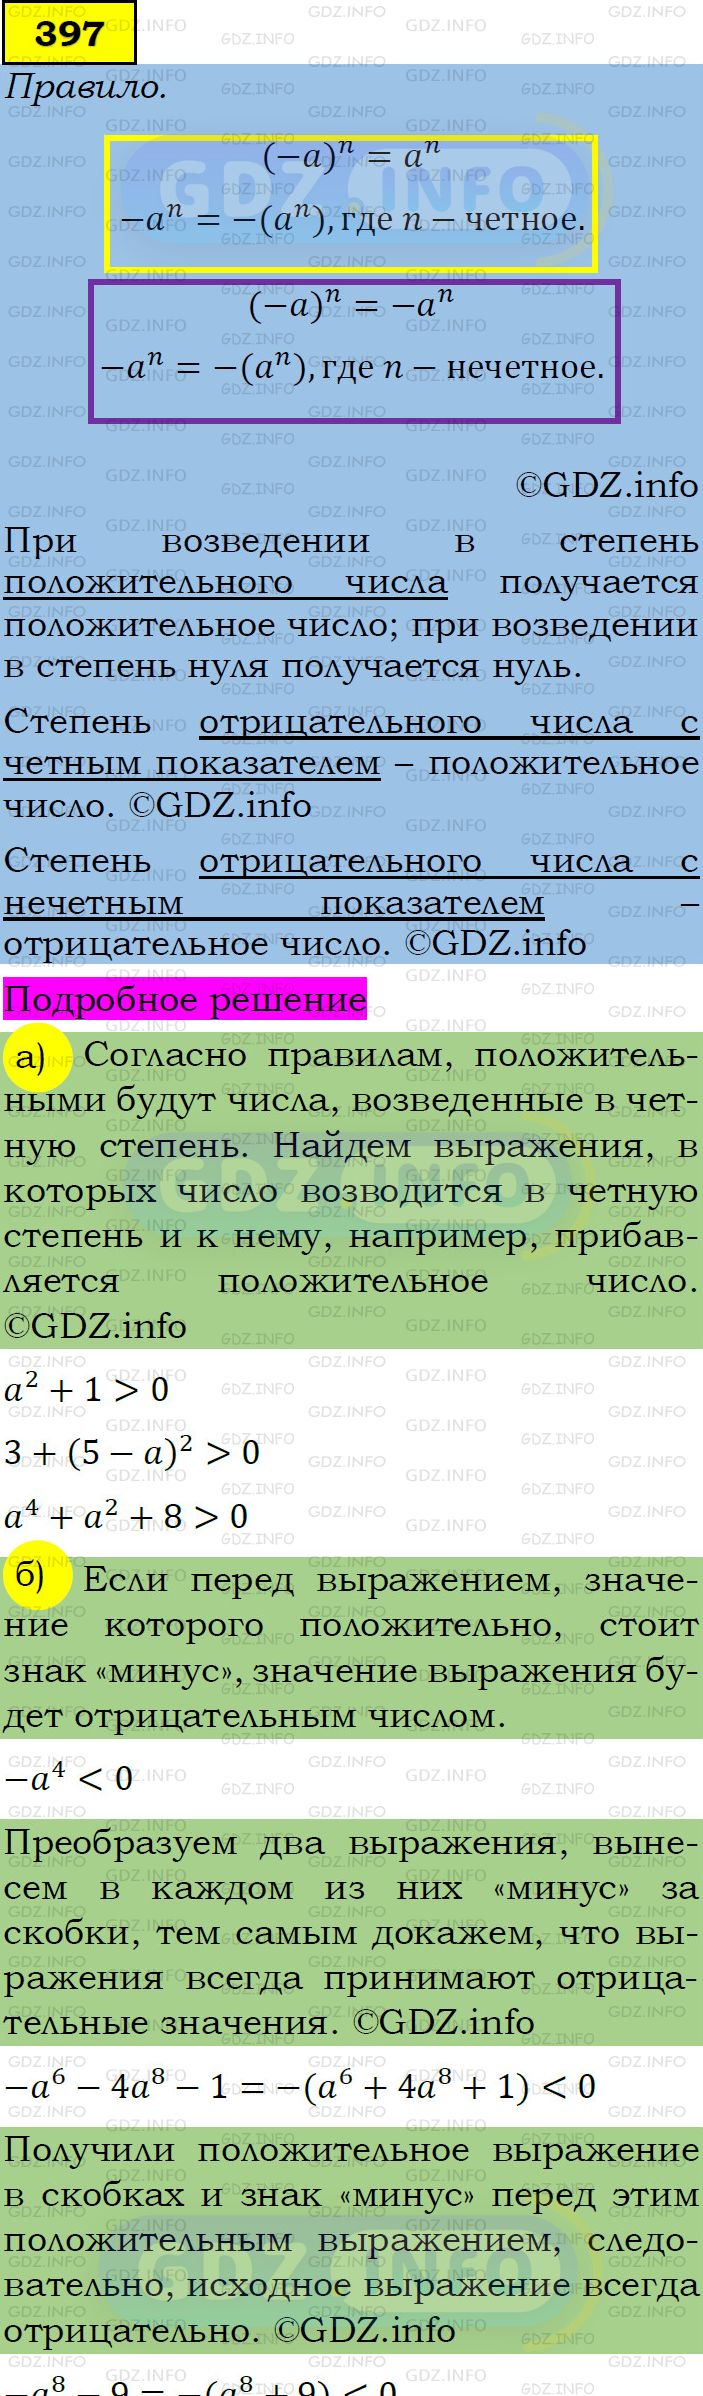 Фото подробного решения: Номер задания №397 из ГДЗ по Алгебре 7 класс: Макарычев Ю.Н.